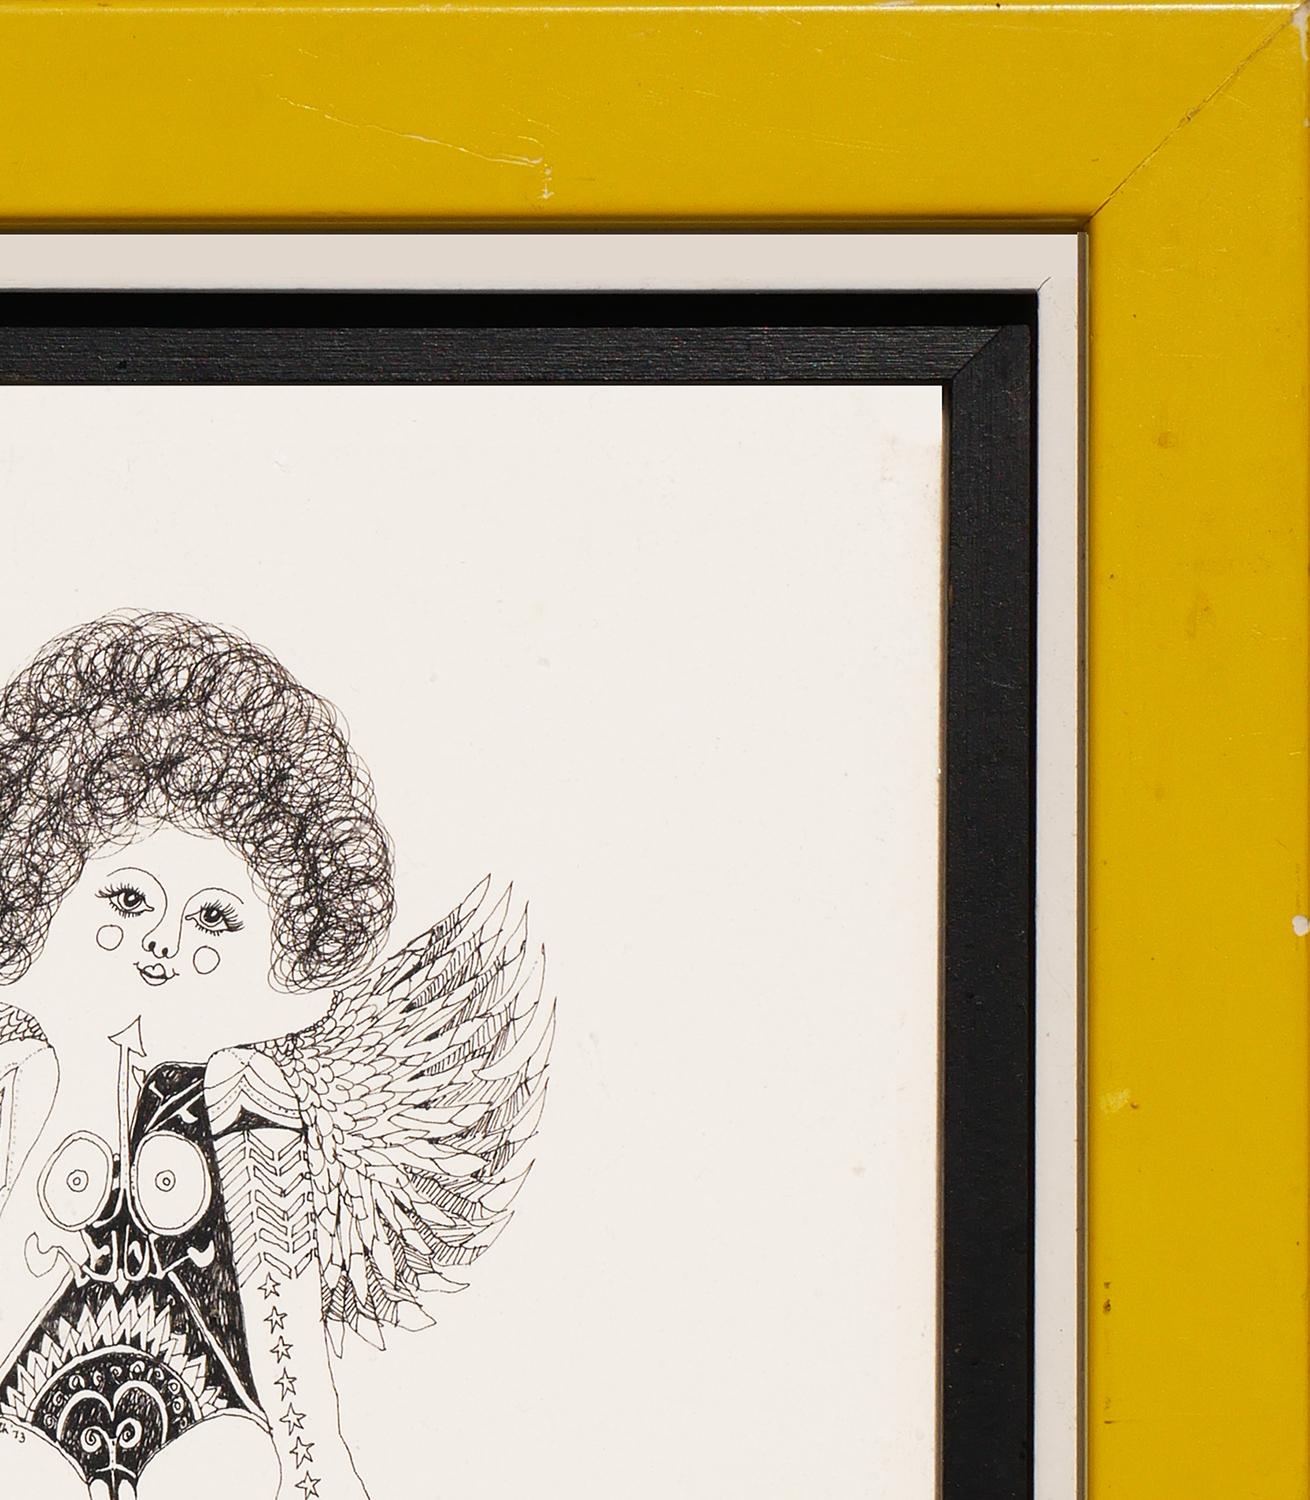 Moderne abstrakte figurative Zeichnung einer nackten, tätowierten Frau mit Flügeln des Künstlers Charles Pebworth aus Houston, TX. Signiert vom Künstler auf der linken Hüfte der Figur. Aufgehängt hinter Glas in einem gelb-schwarz-weißen Rahmen.